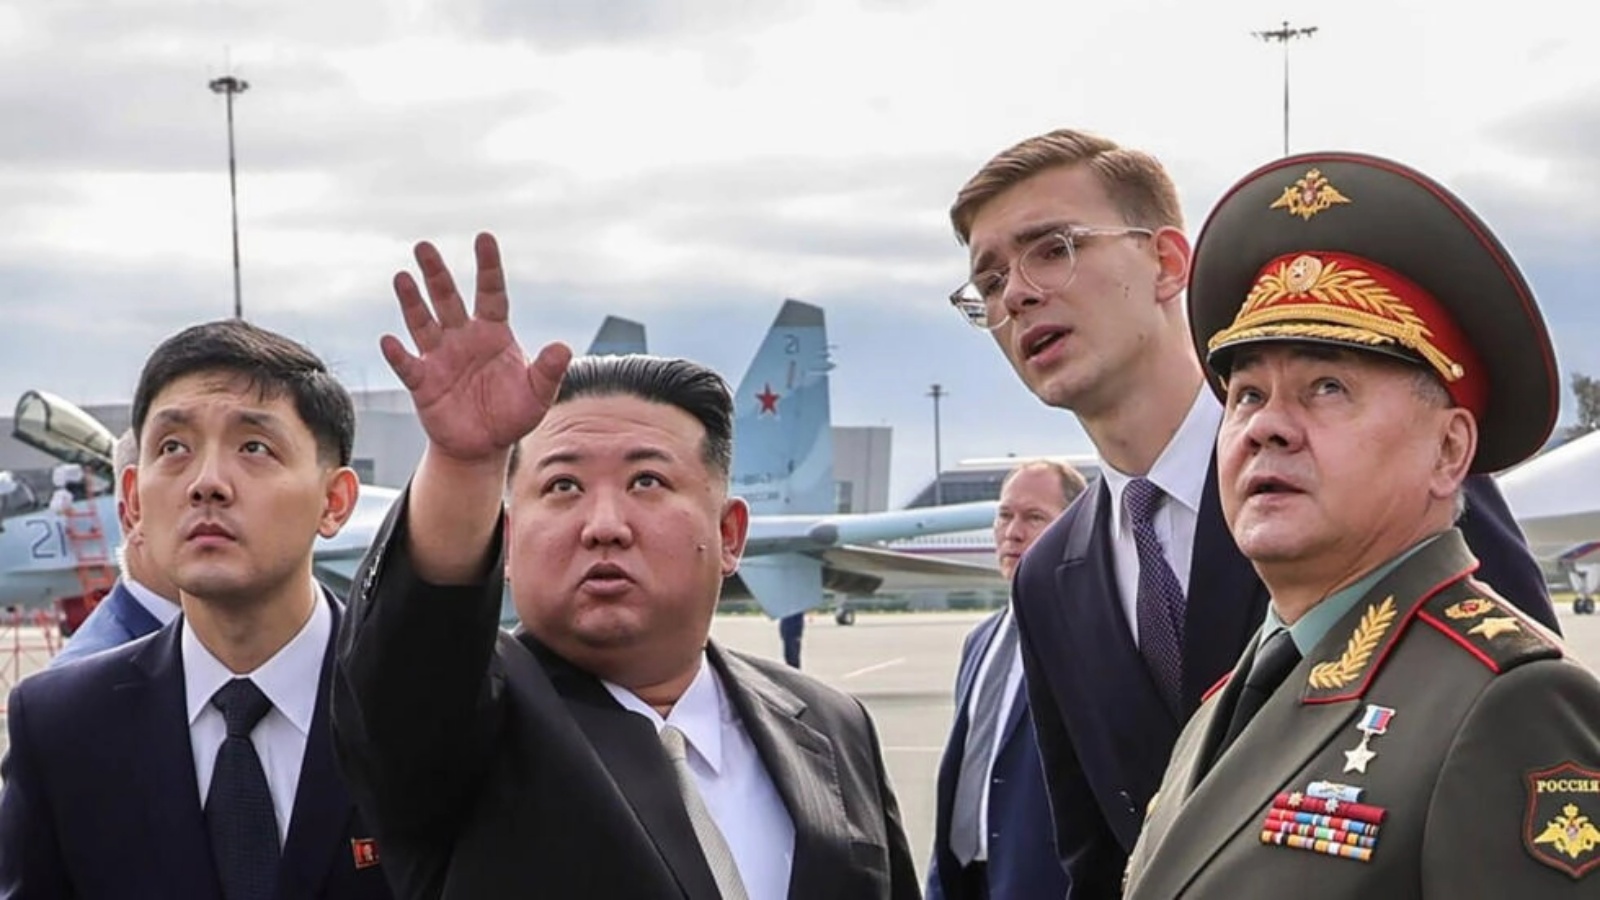 صورة وزّعتها وزارة الدفاع الروسية تُظهر الزعيم الكوري الشمالي كيم جونغ-أون (الثاني من اليسار) مع وزير الدفاع الروسي سيرغي شويغو (الأول من اليمين) في مطار كنيفيتشي قرب فلاديسفوستوك في أقصى الشرق الروسي في 16 سبتمبر 2023